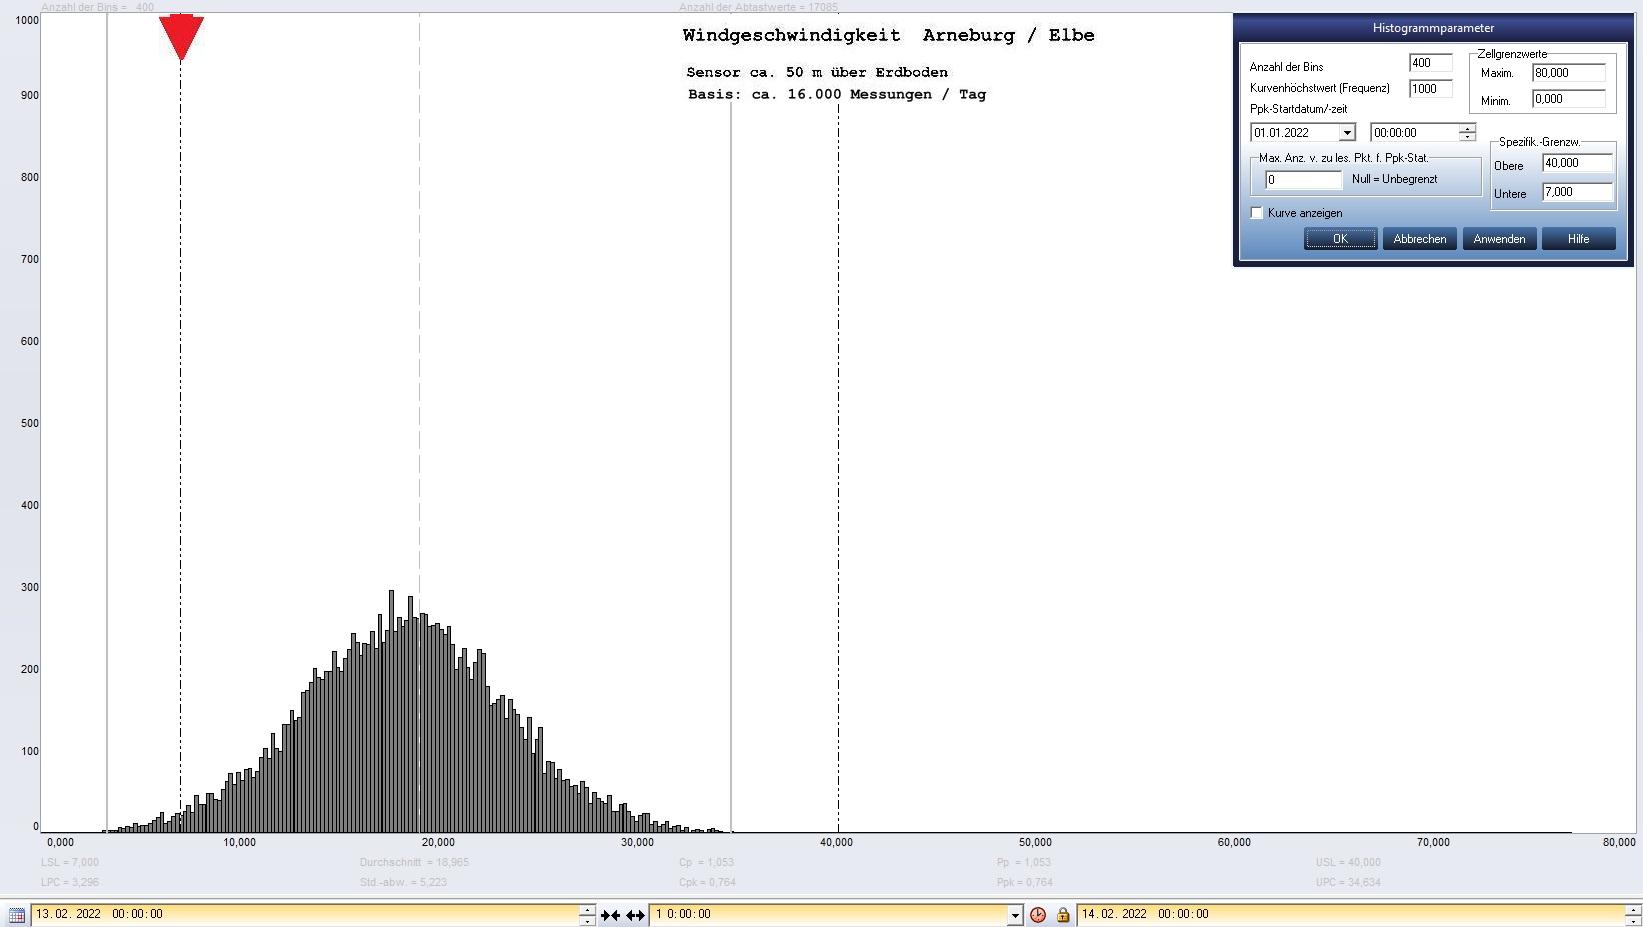 Arneburg Tages-Histogramm Winddaten, 13.02.2022
  Histogramm, Sensor auf Gebude, ca. 50 m ber Erdboden, Basis: 5s-Aufzeichnung